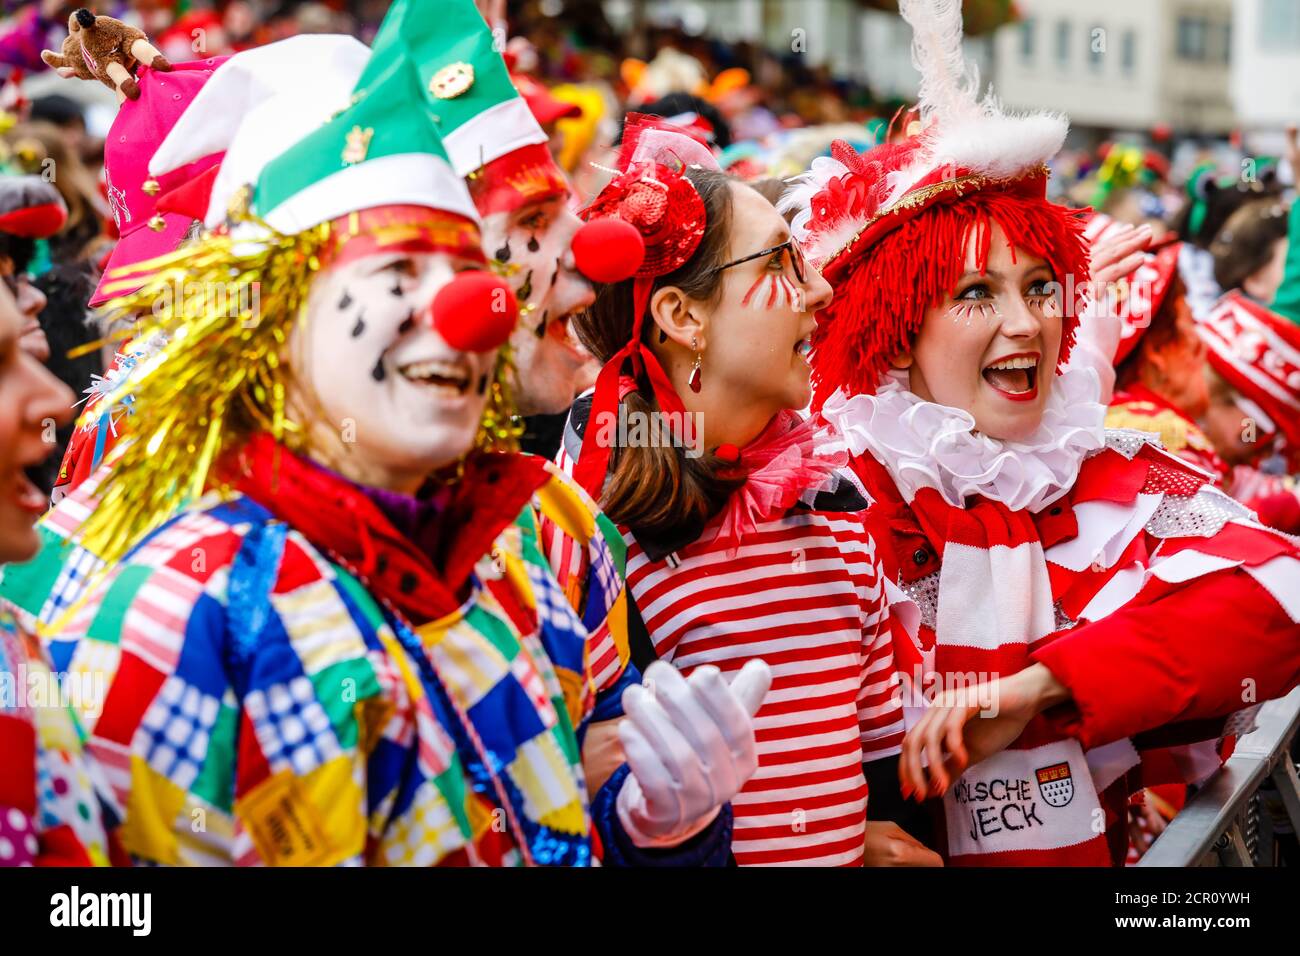 Des carnivores aux costumes colorés célèbrent le Carnaval de Cologne, sur Weiberfastnacht le carnaval de rue s'ouvre traditionnellement sur l'alter Markt, qui Banque D'Images